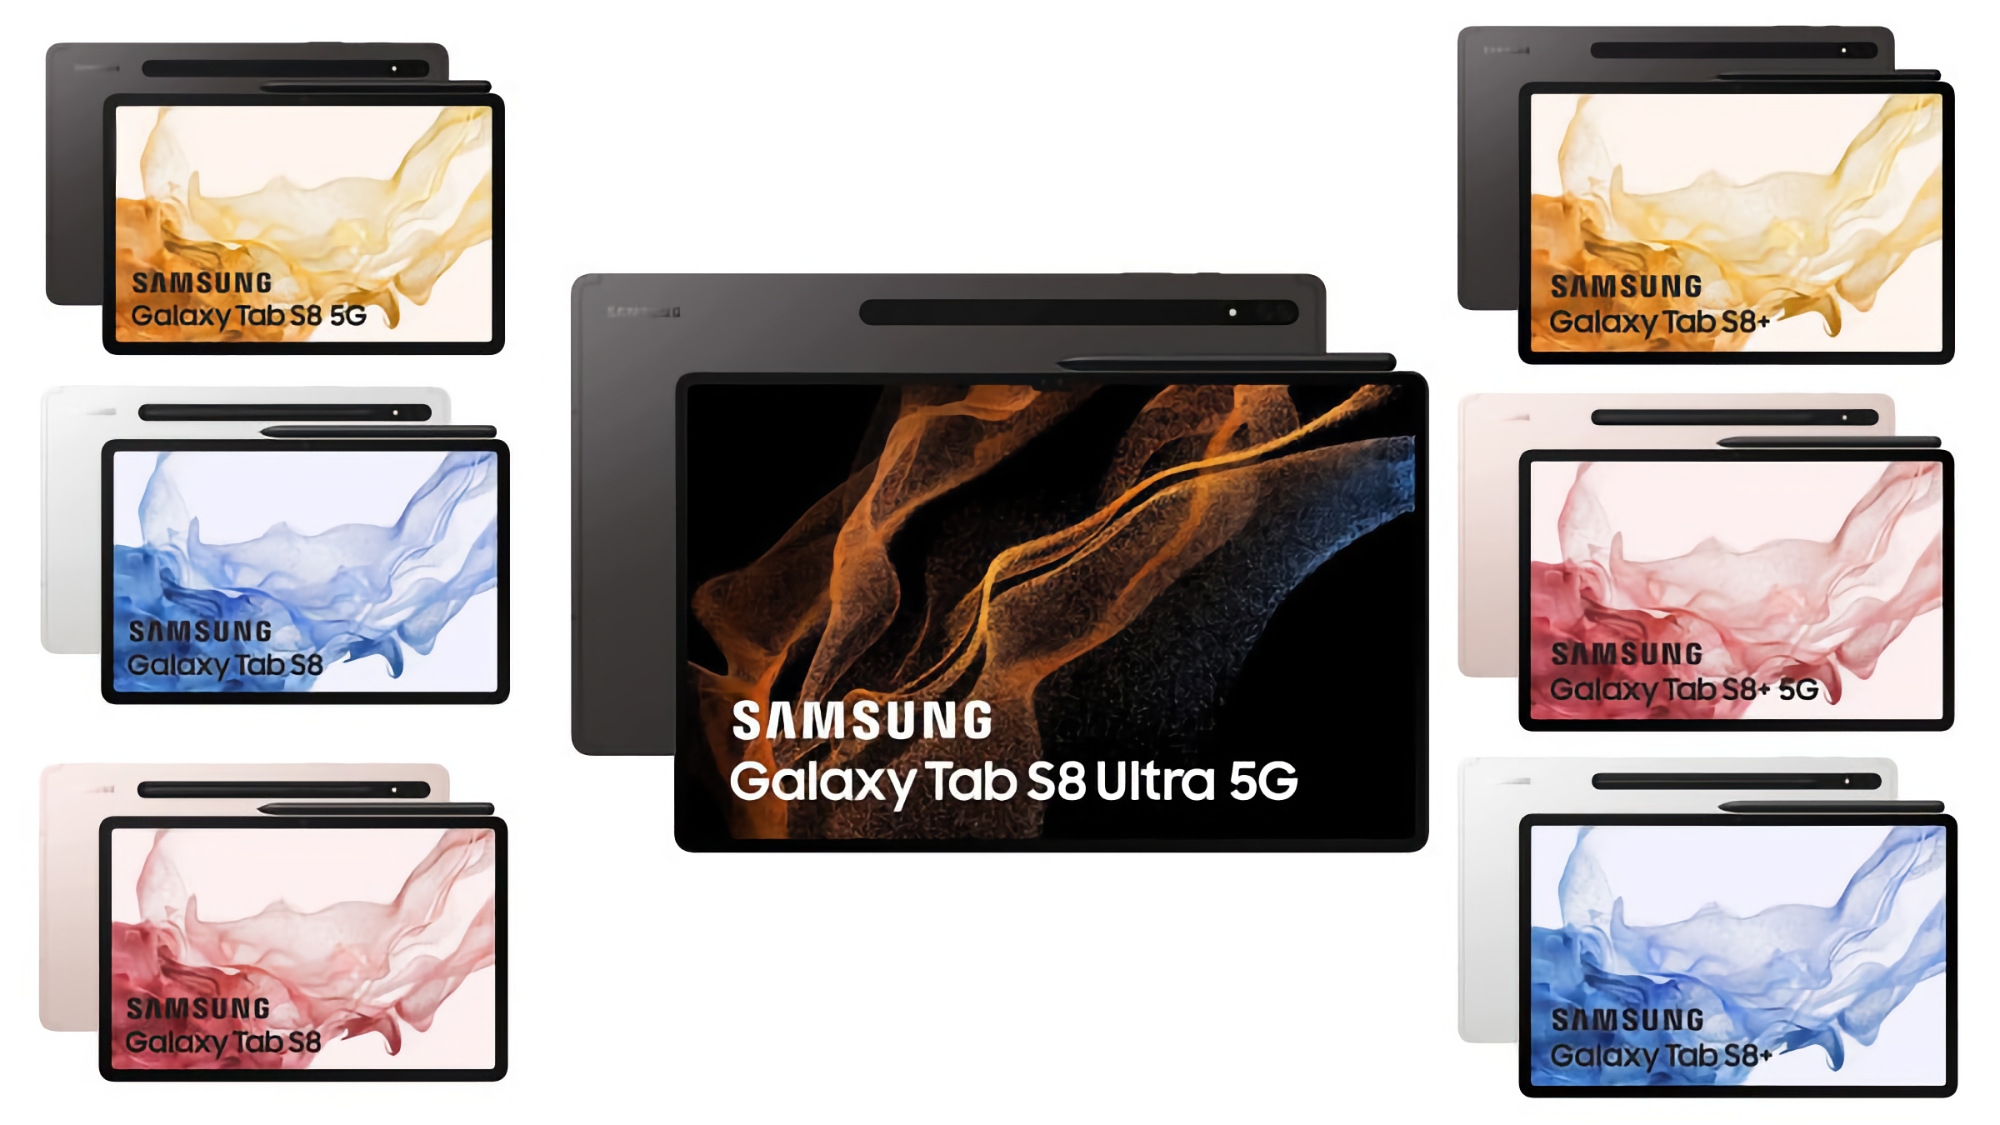 Tańsze niż oczekiwano: informator ujawnił ceny tabletów Galaxy Tab S8, Galaxy Tab S8+ i Galaxy Tab S8 Ultra w Europie